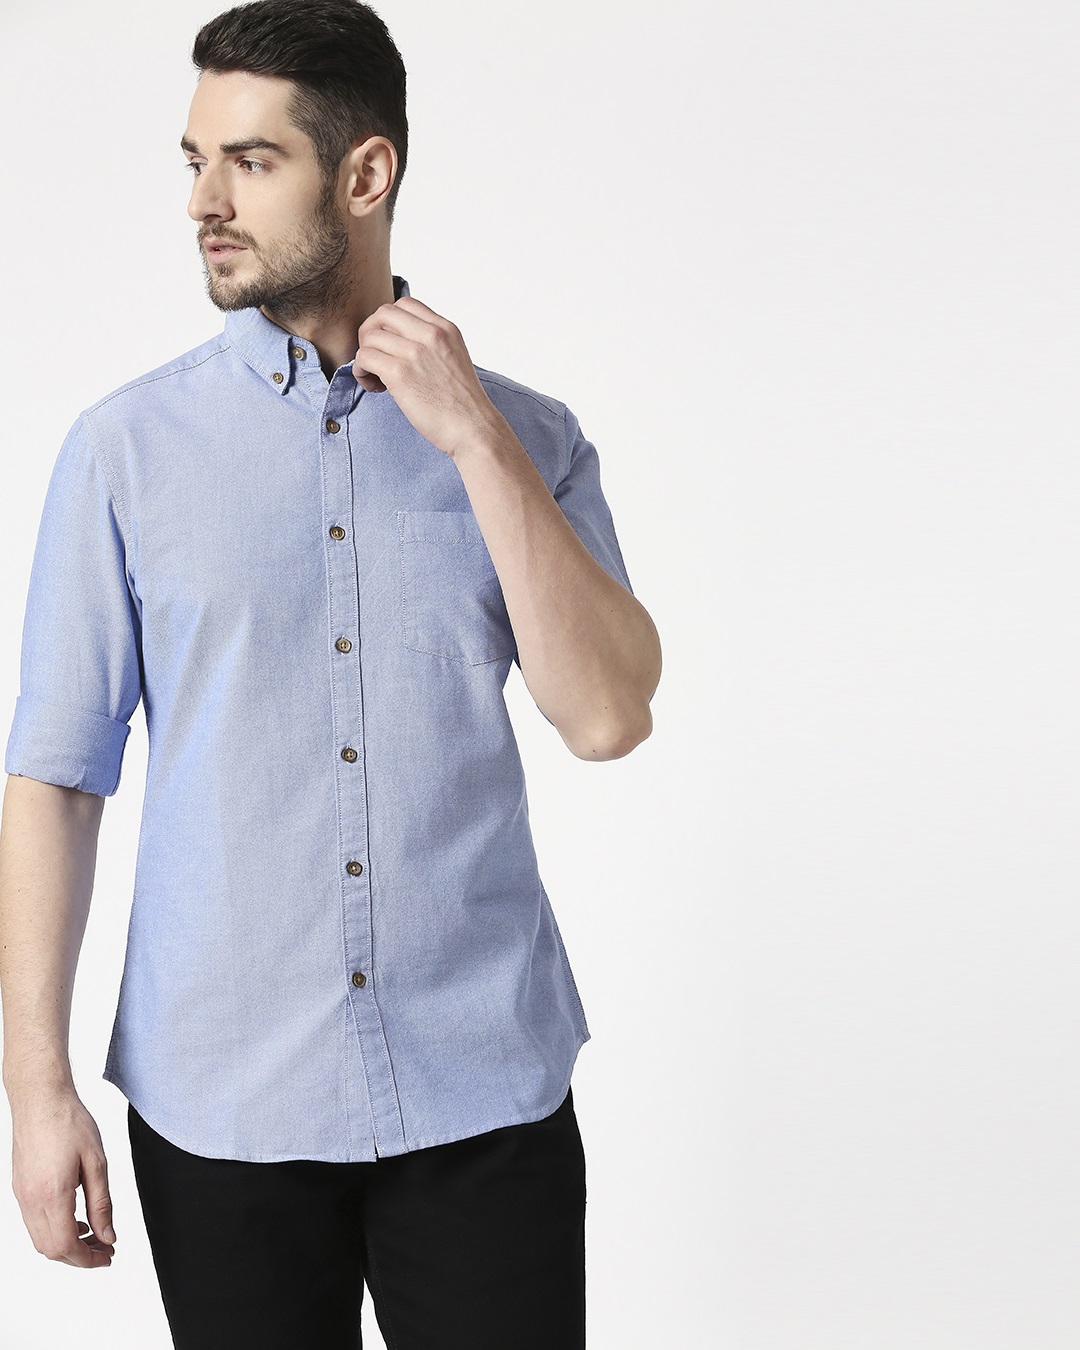 Buy Men's Lt Blue Slim Fit Casual Oxford Shirt Online at Bewakoof